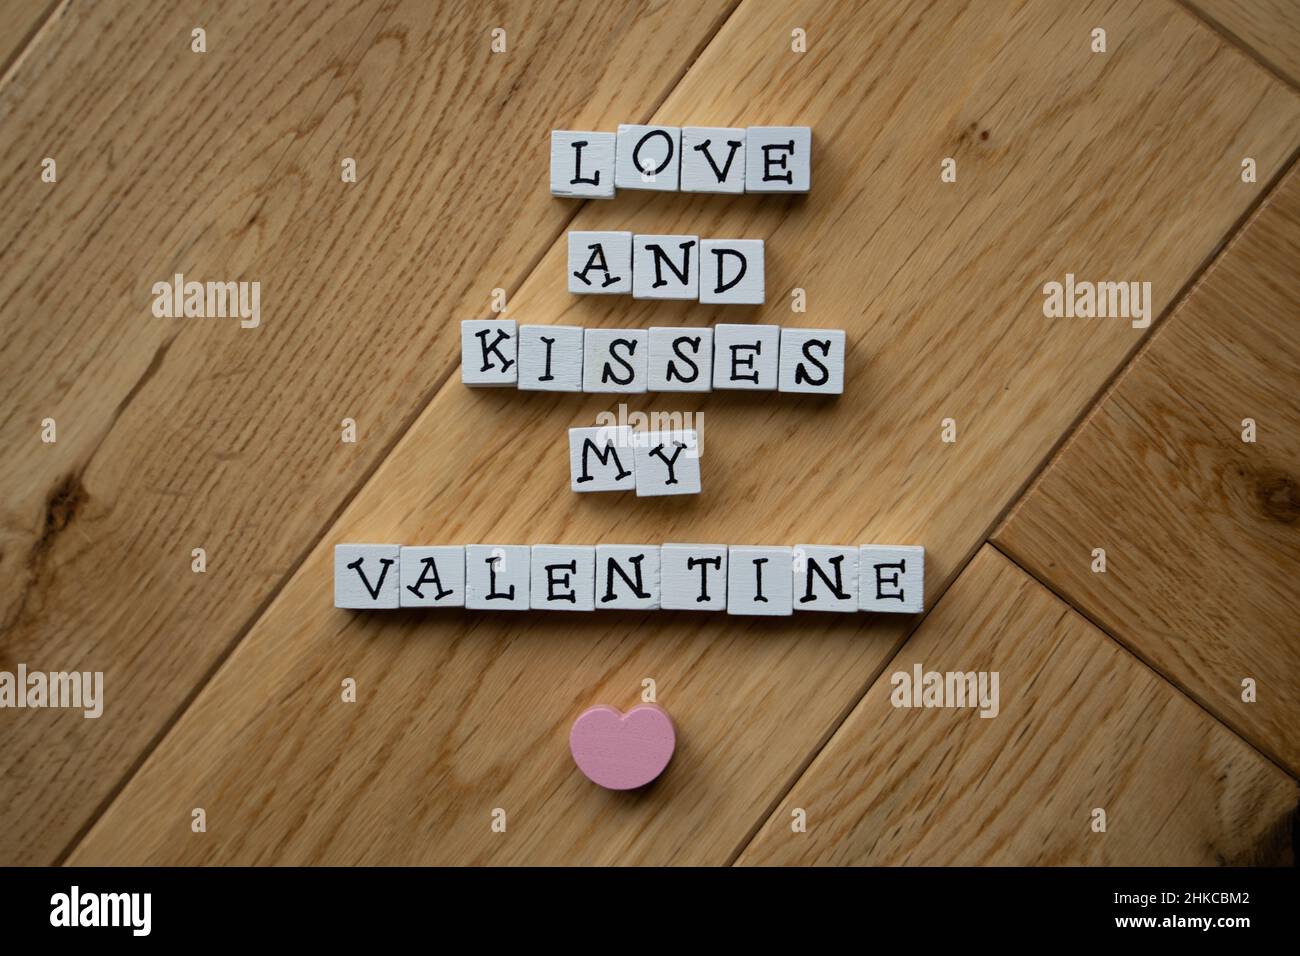 Weiße Holzbalken mit schwarzen Großbuchstaben bringen eine Botschaft zum Valentinstag mit rosafarbenem Herzen auf Holzparkett-Hintergrund zum Ausdruck. Stockfoto